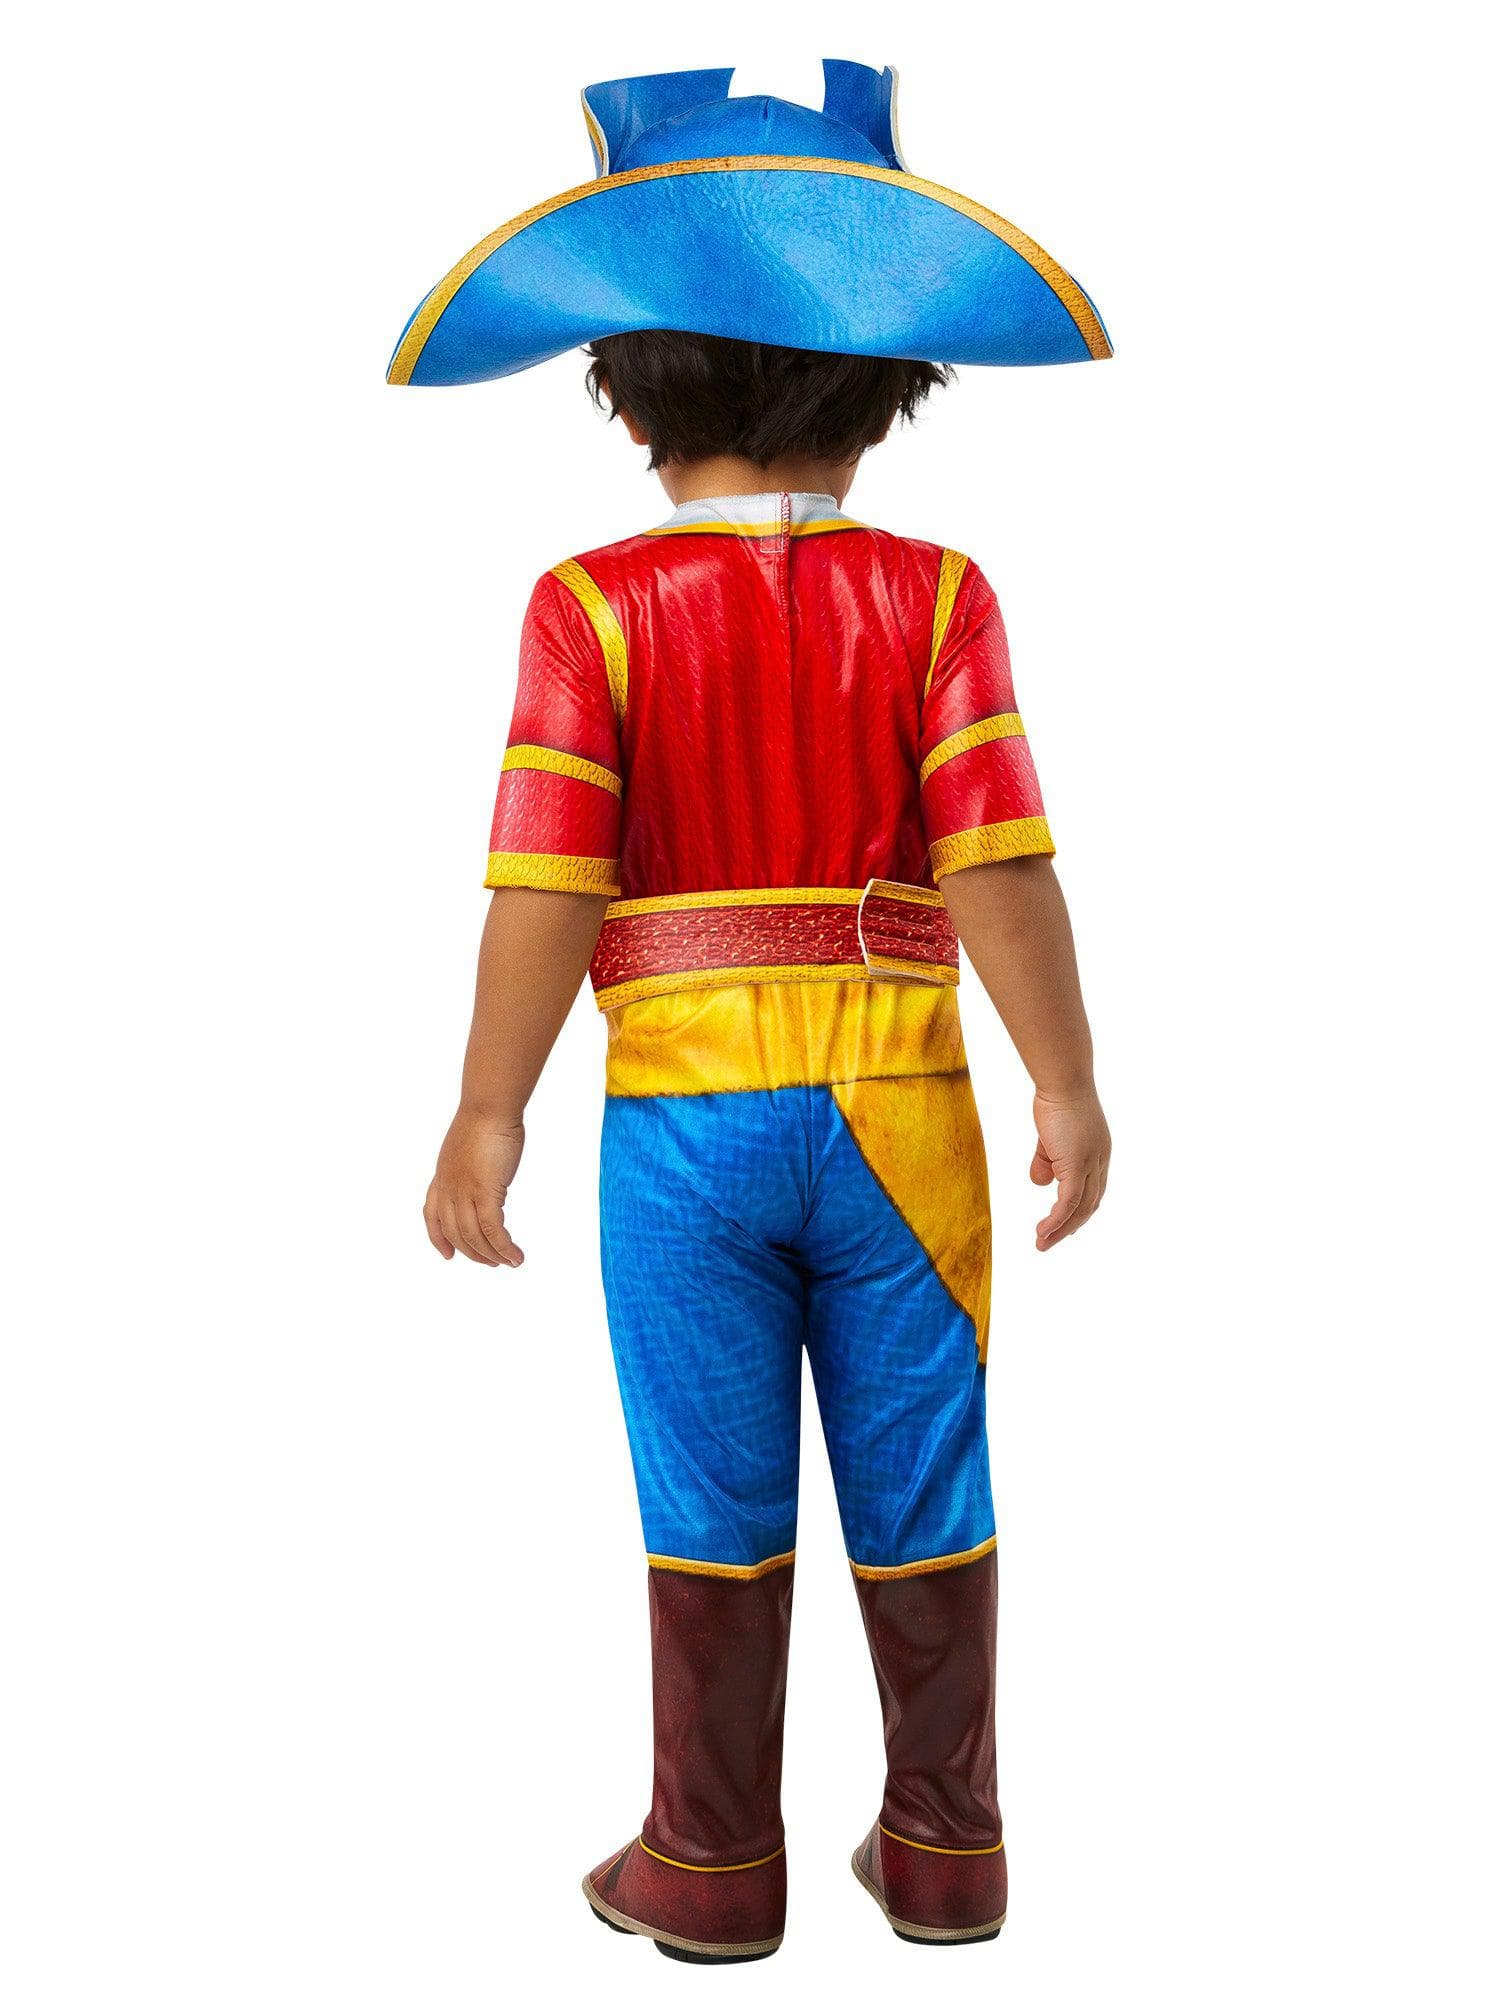 Santiago of the Seas Toddler Costume - costumes.com